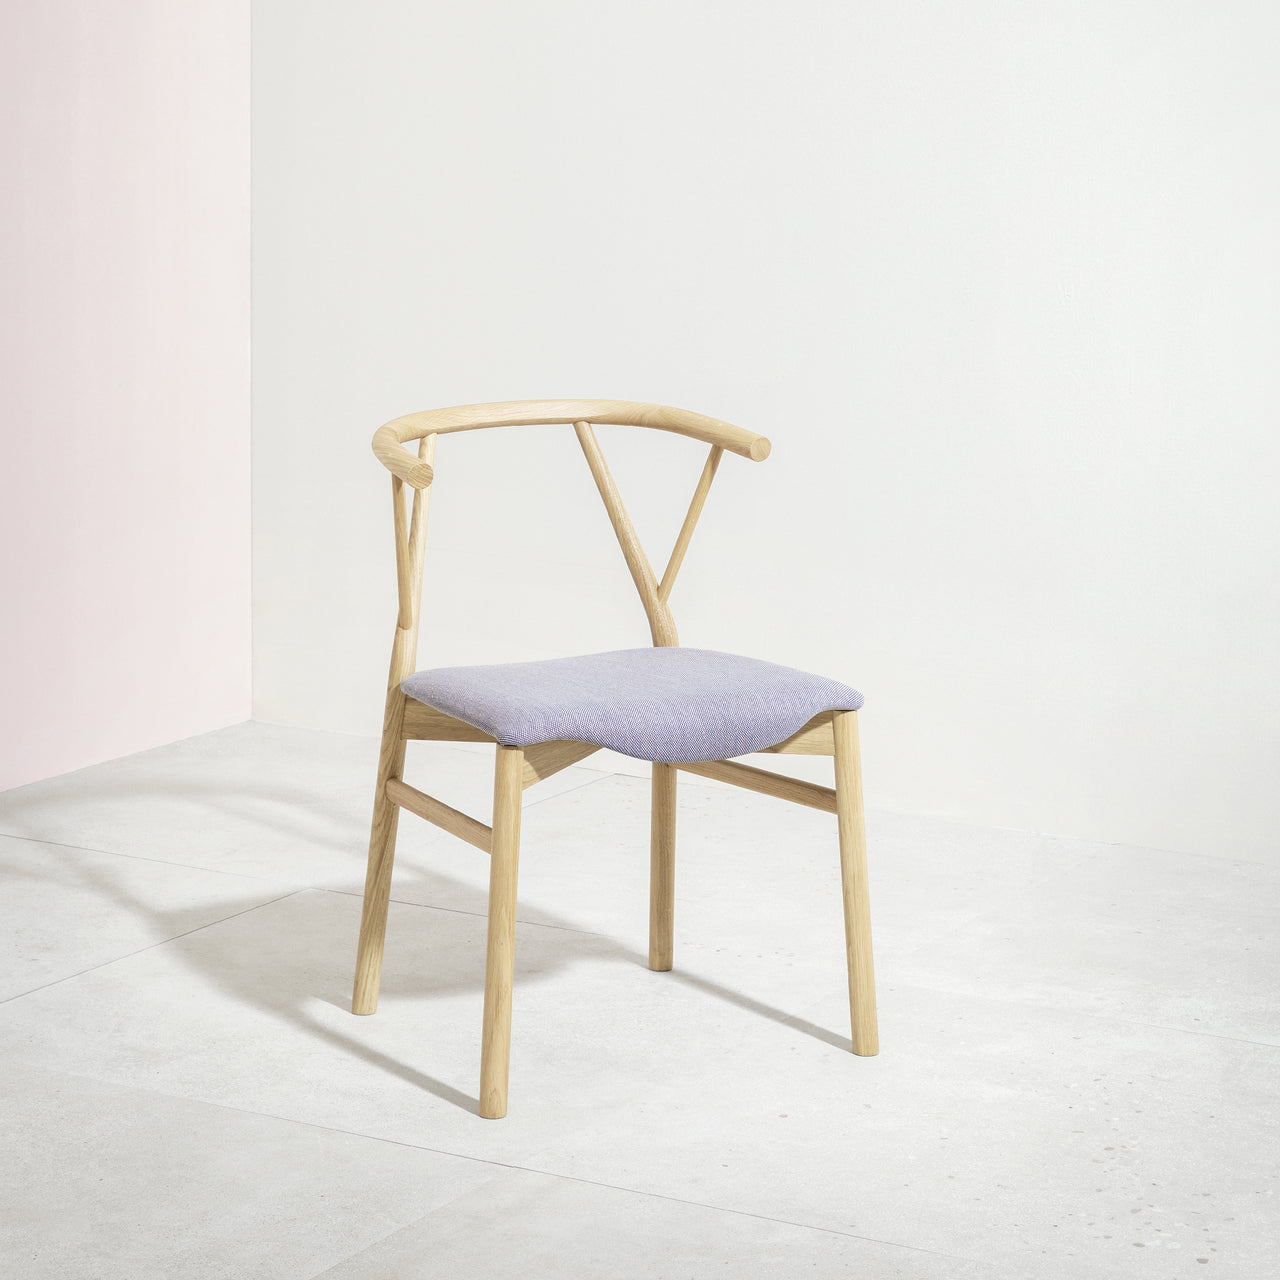 Valerie Chair: Upholstered